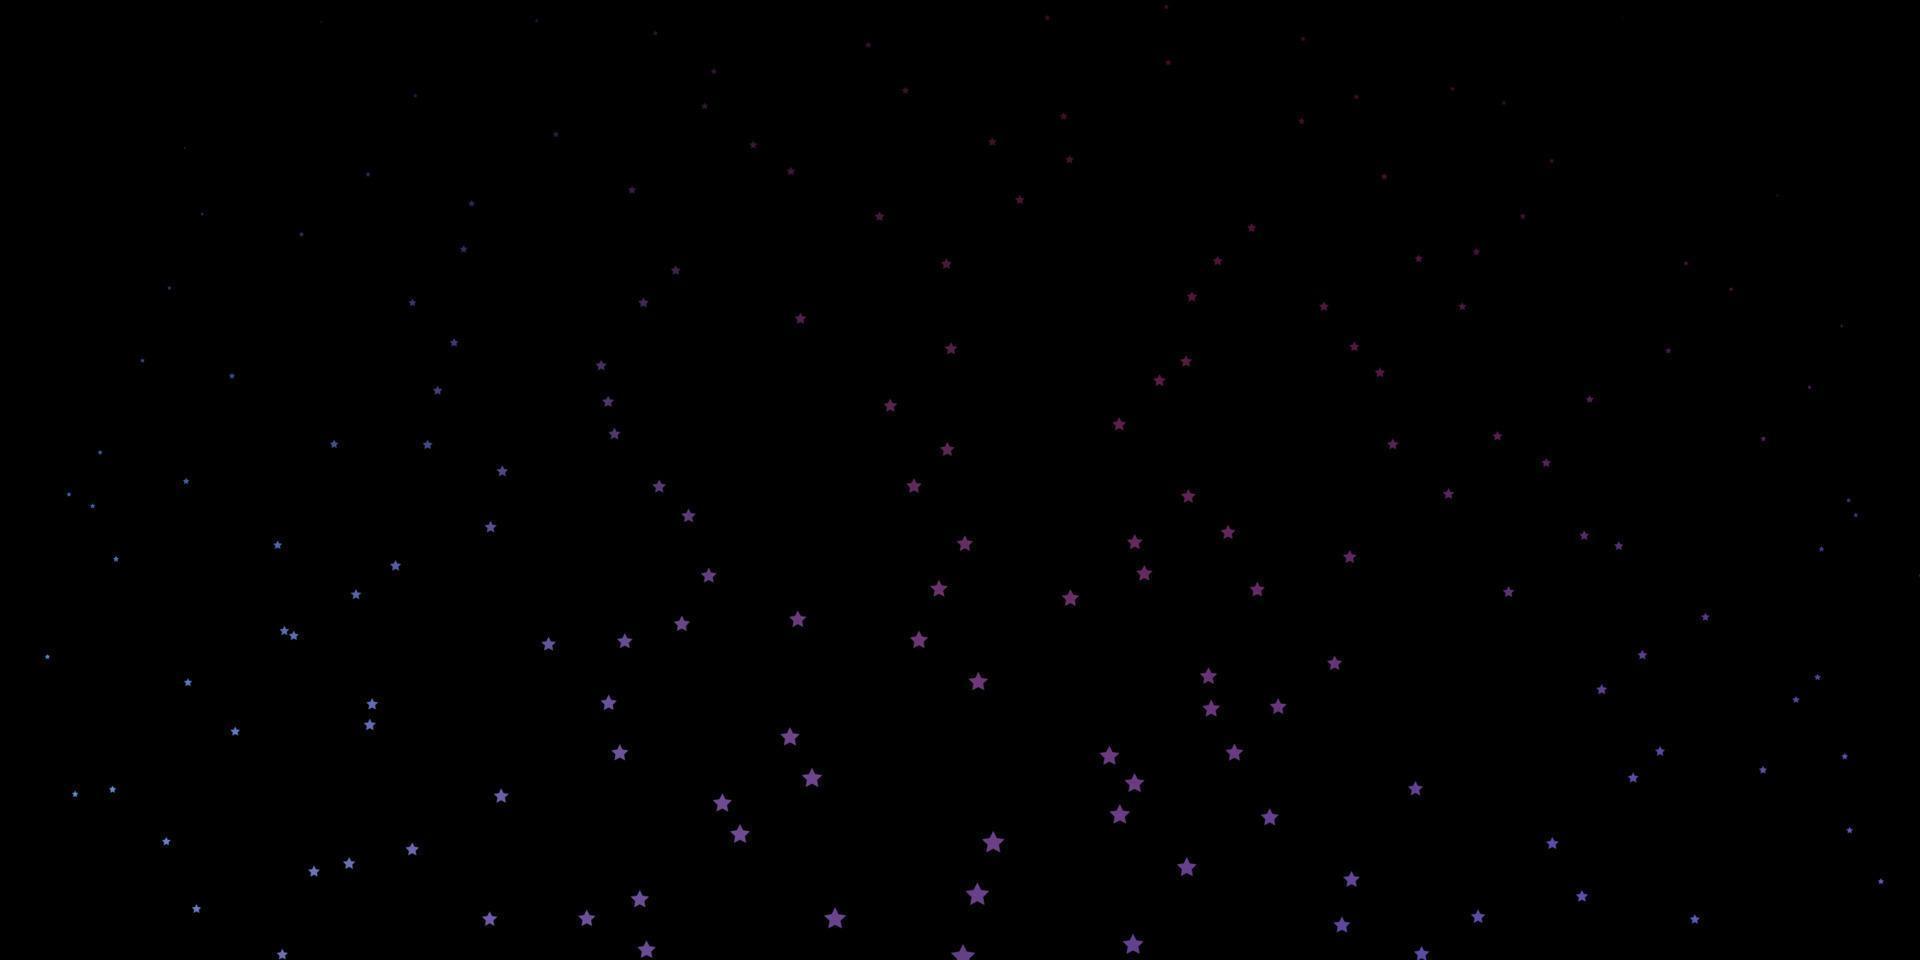 trama vettoriale viola scuro con bellissime stelle.